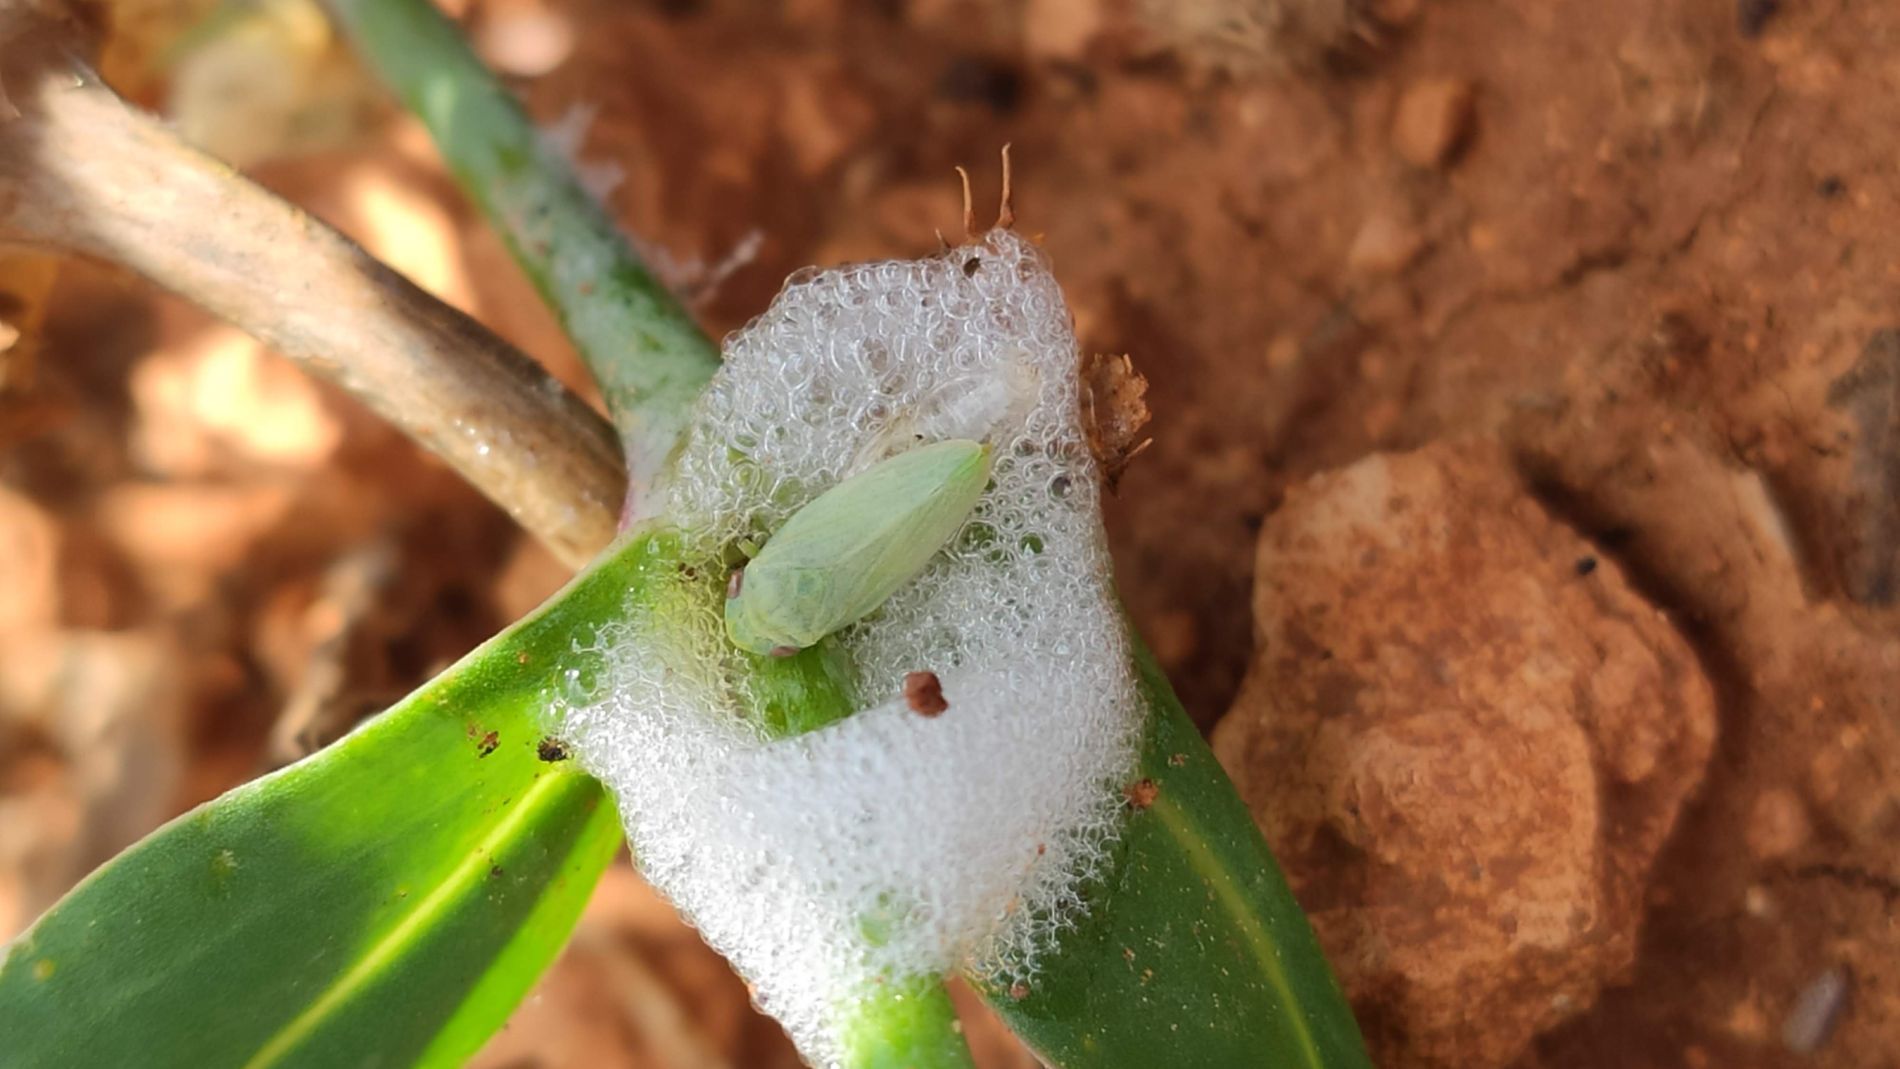 La UIB identifica los insectos responsables de la transmisión de la 'Xylella fastidiosa' en Baleares